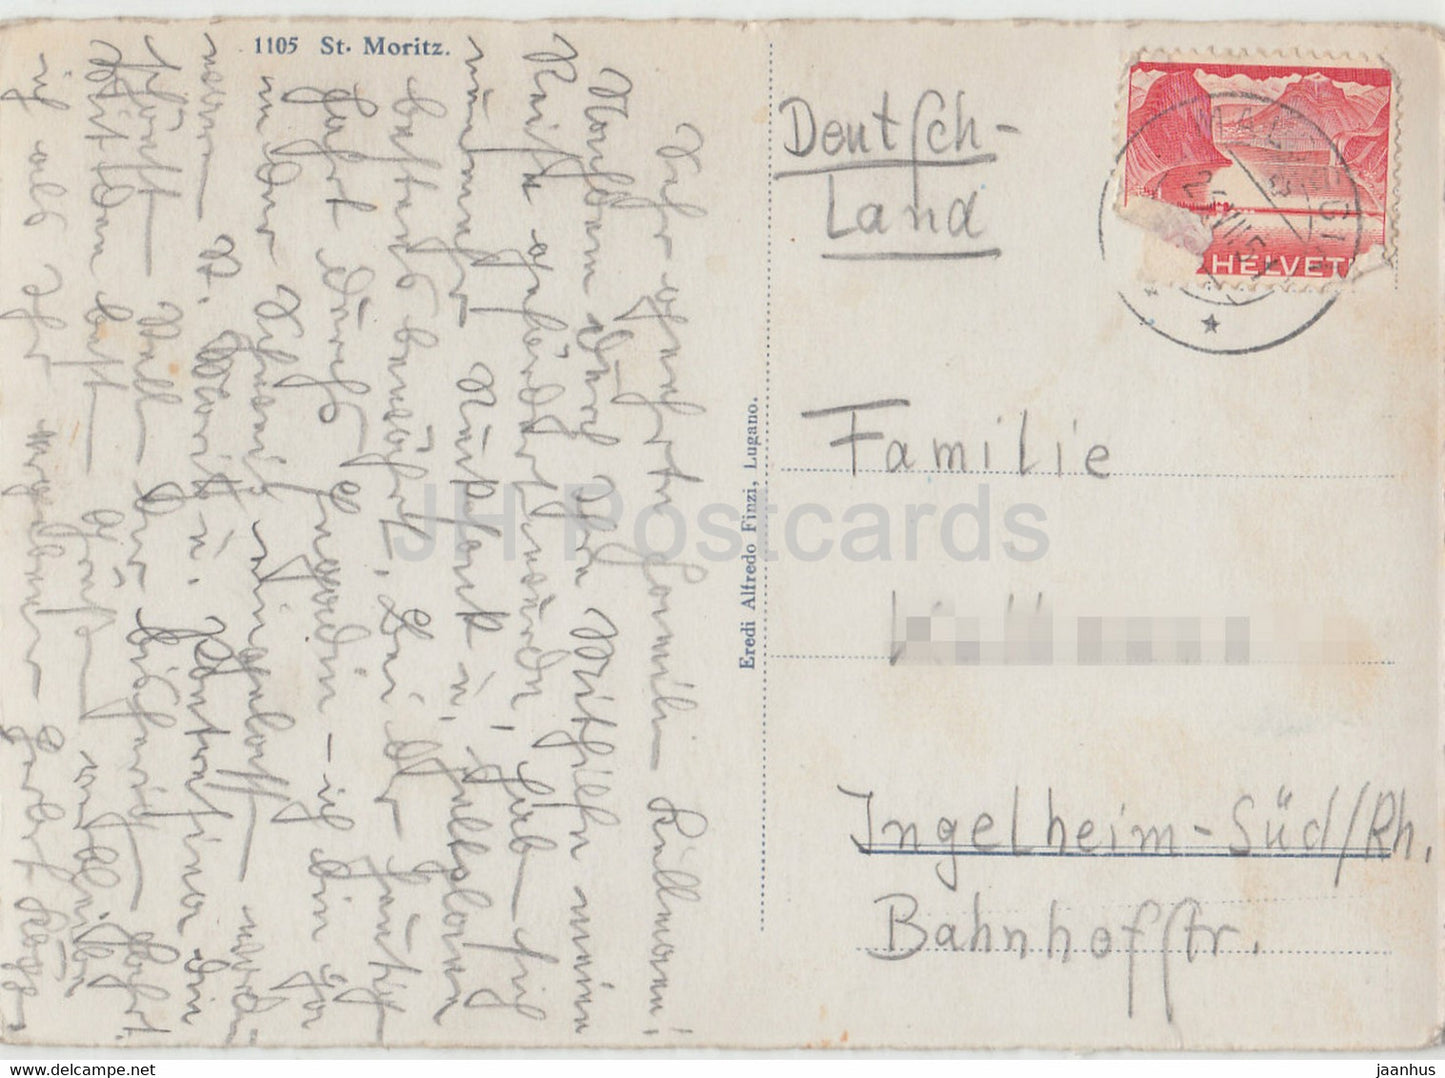 St Moritz - 1105 - carte postale ancienne - 1951 - Suisse - utilisé